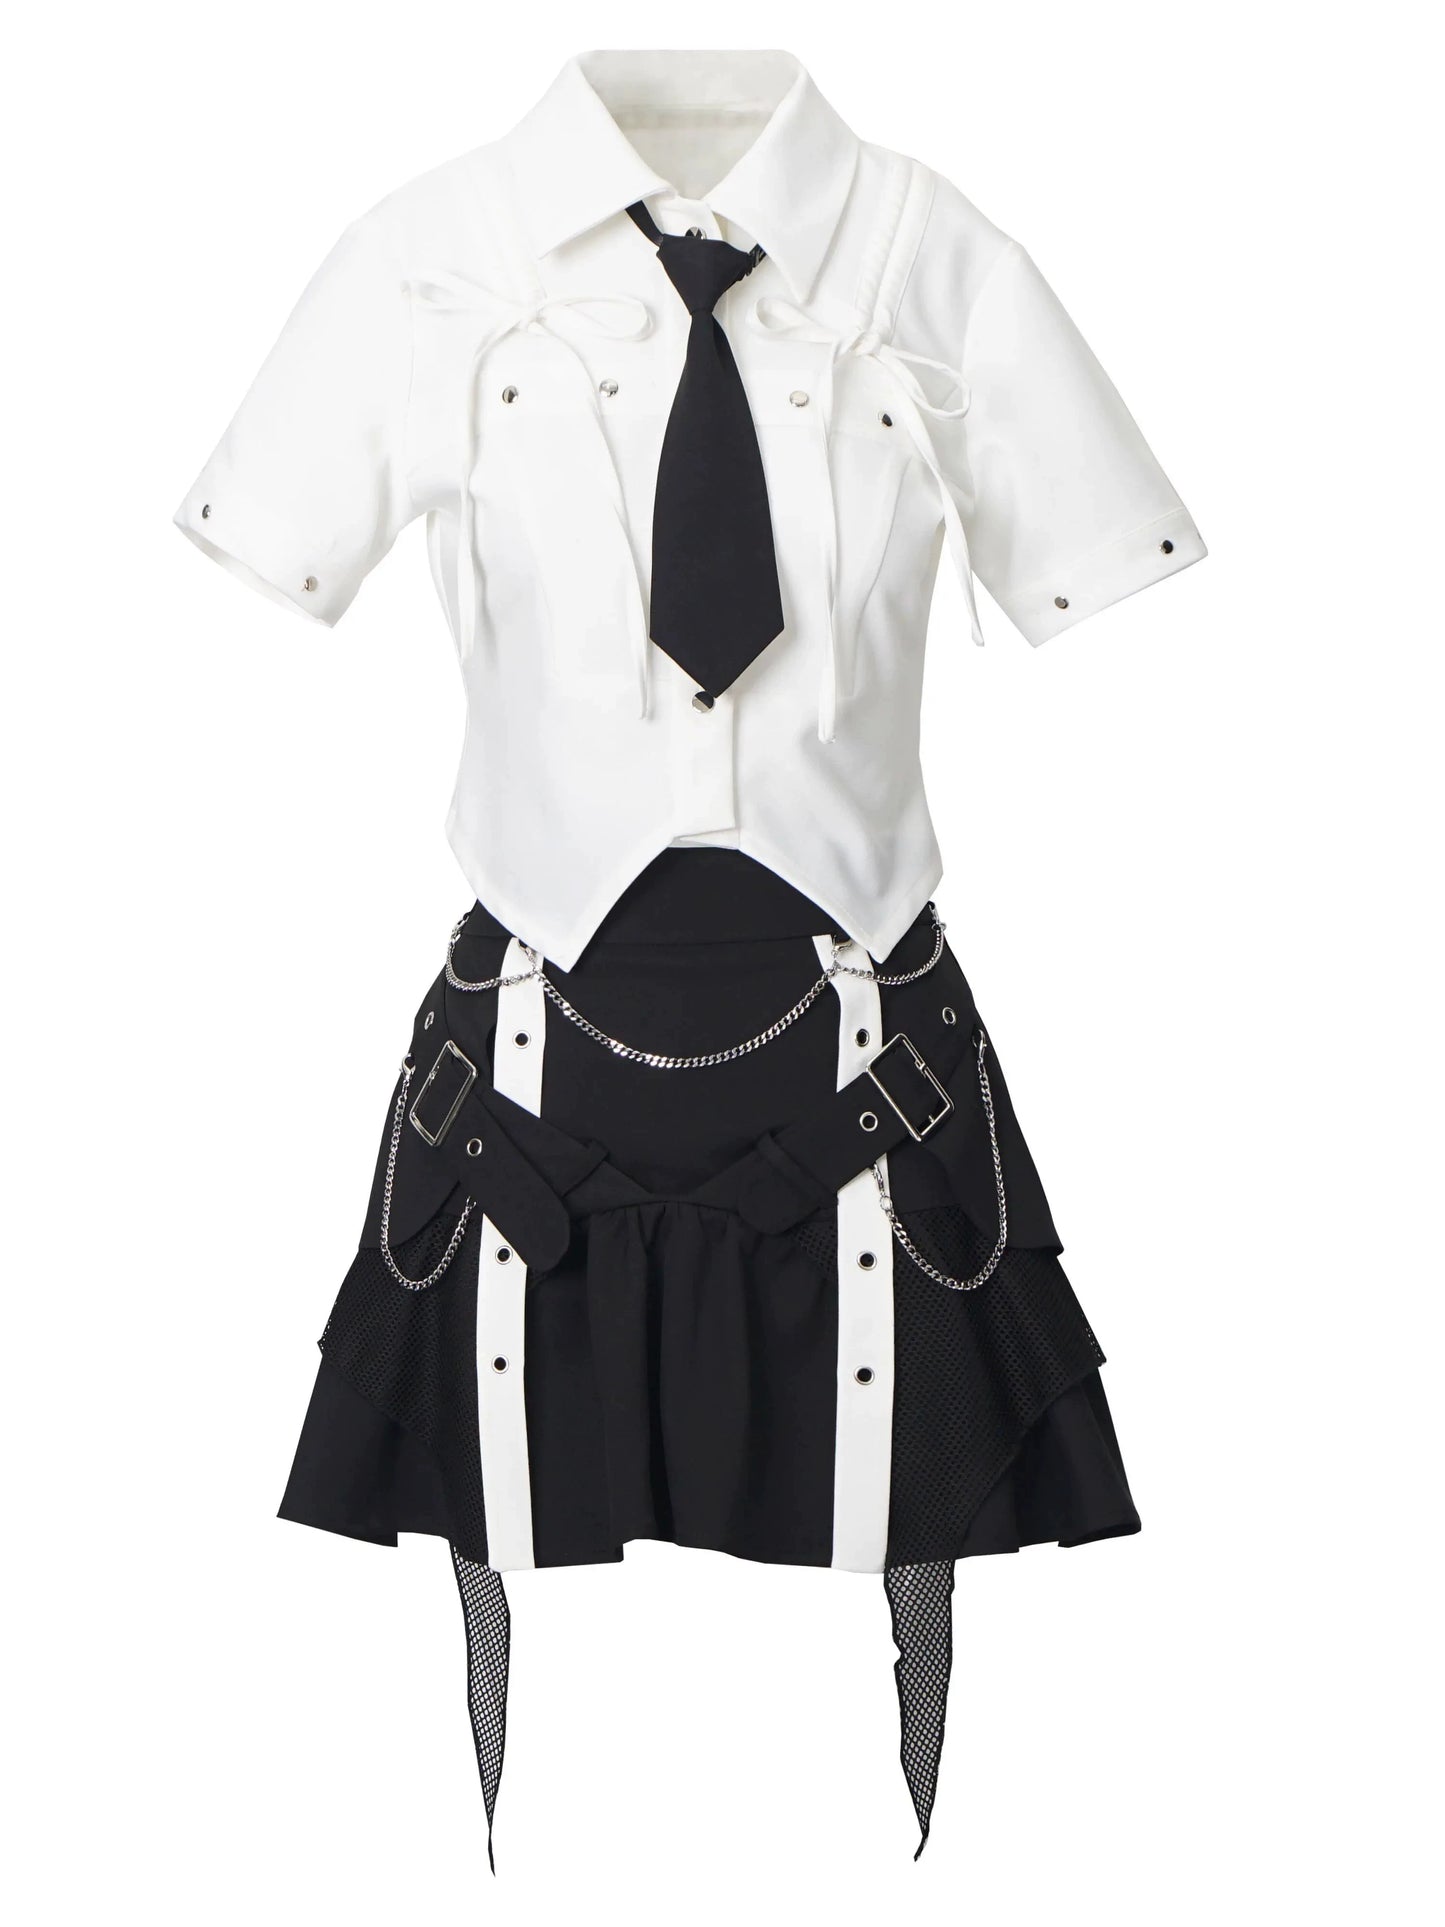 College design shirt + skirt + harness